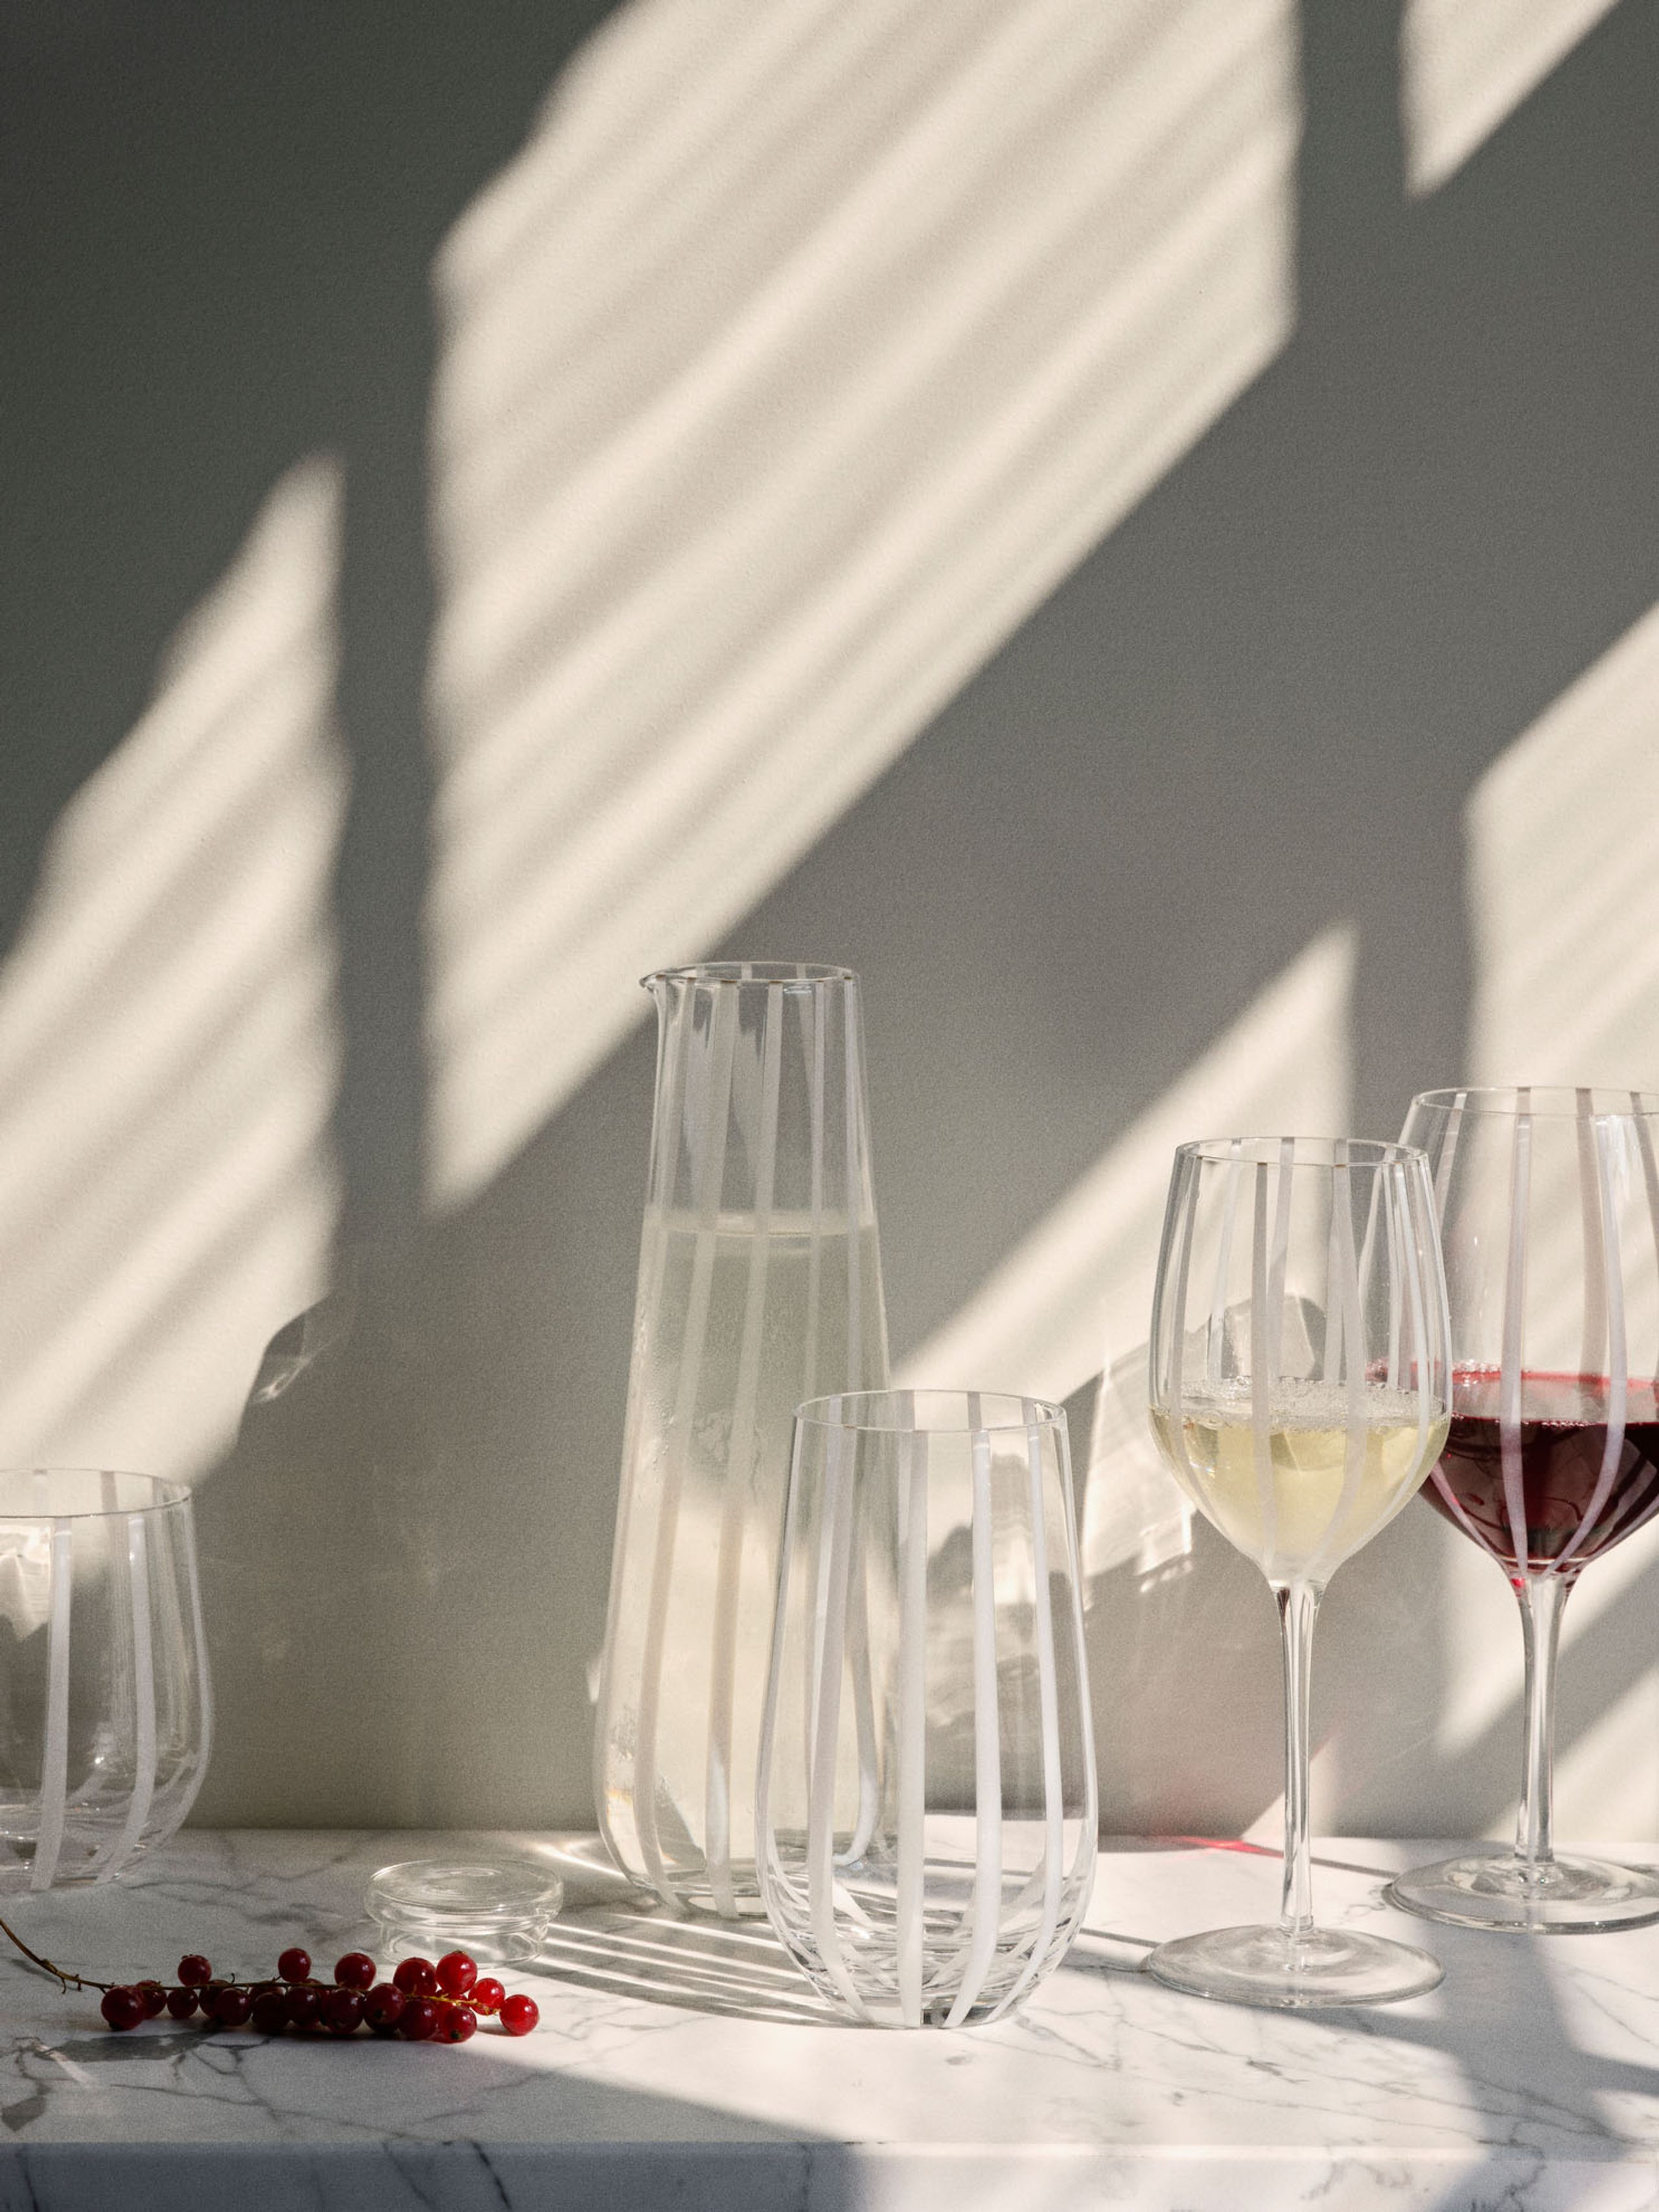 Broste CPH - Verre à vin - Stripe White Wine Glass - Clear/White